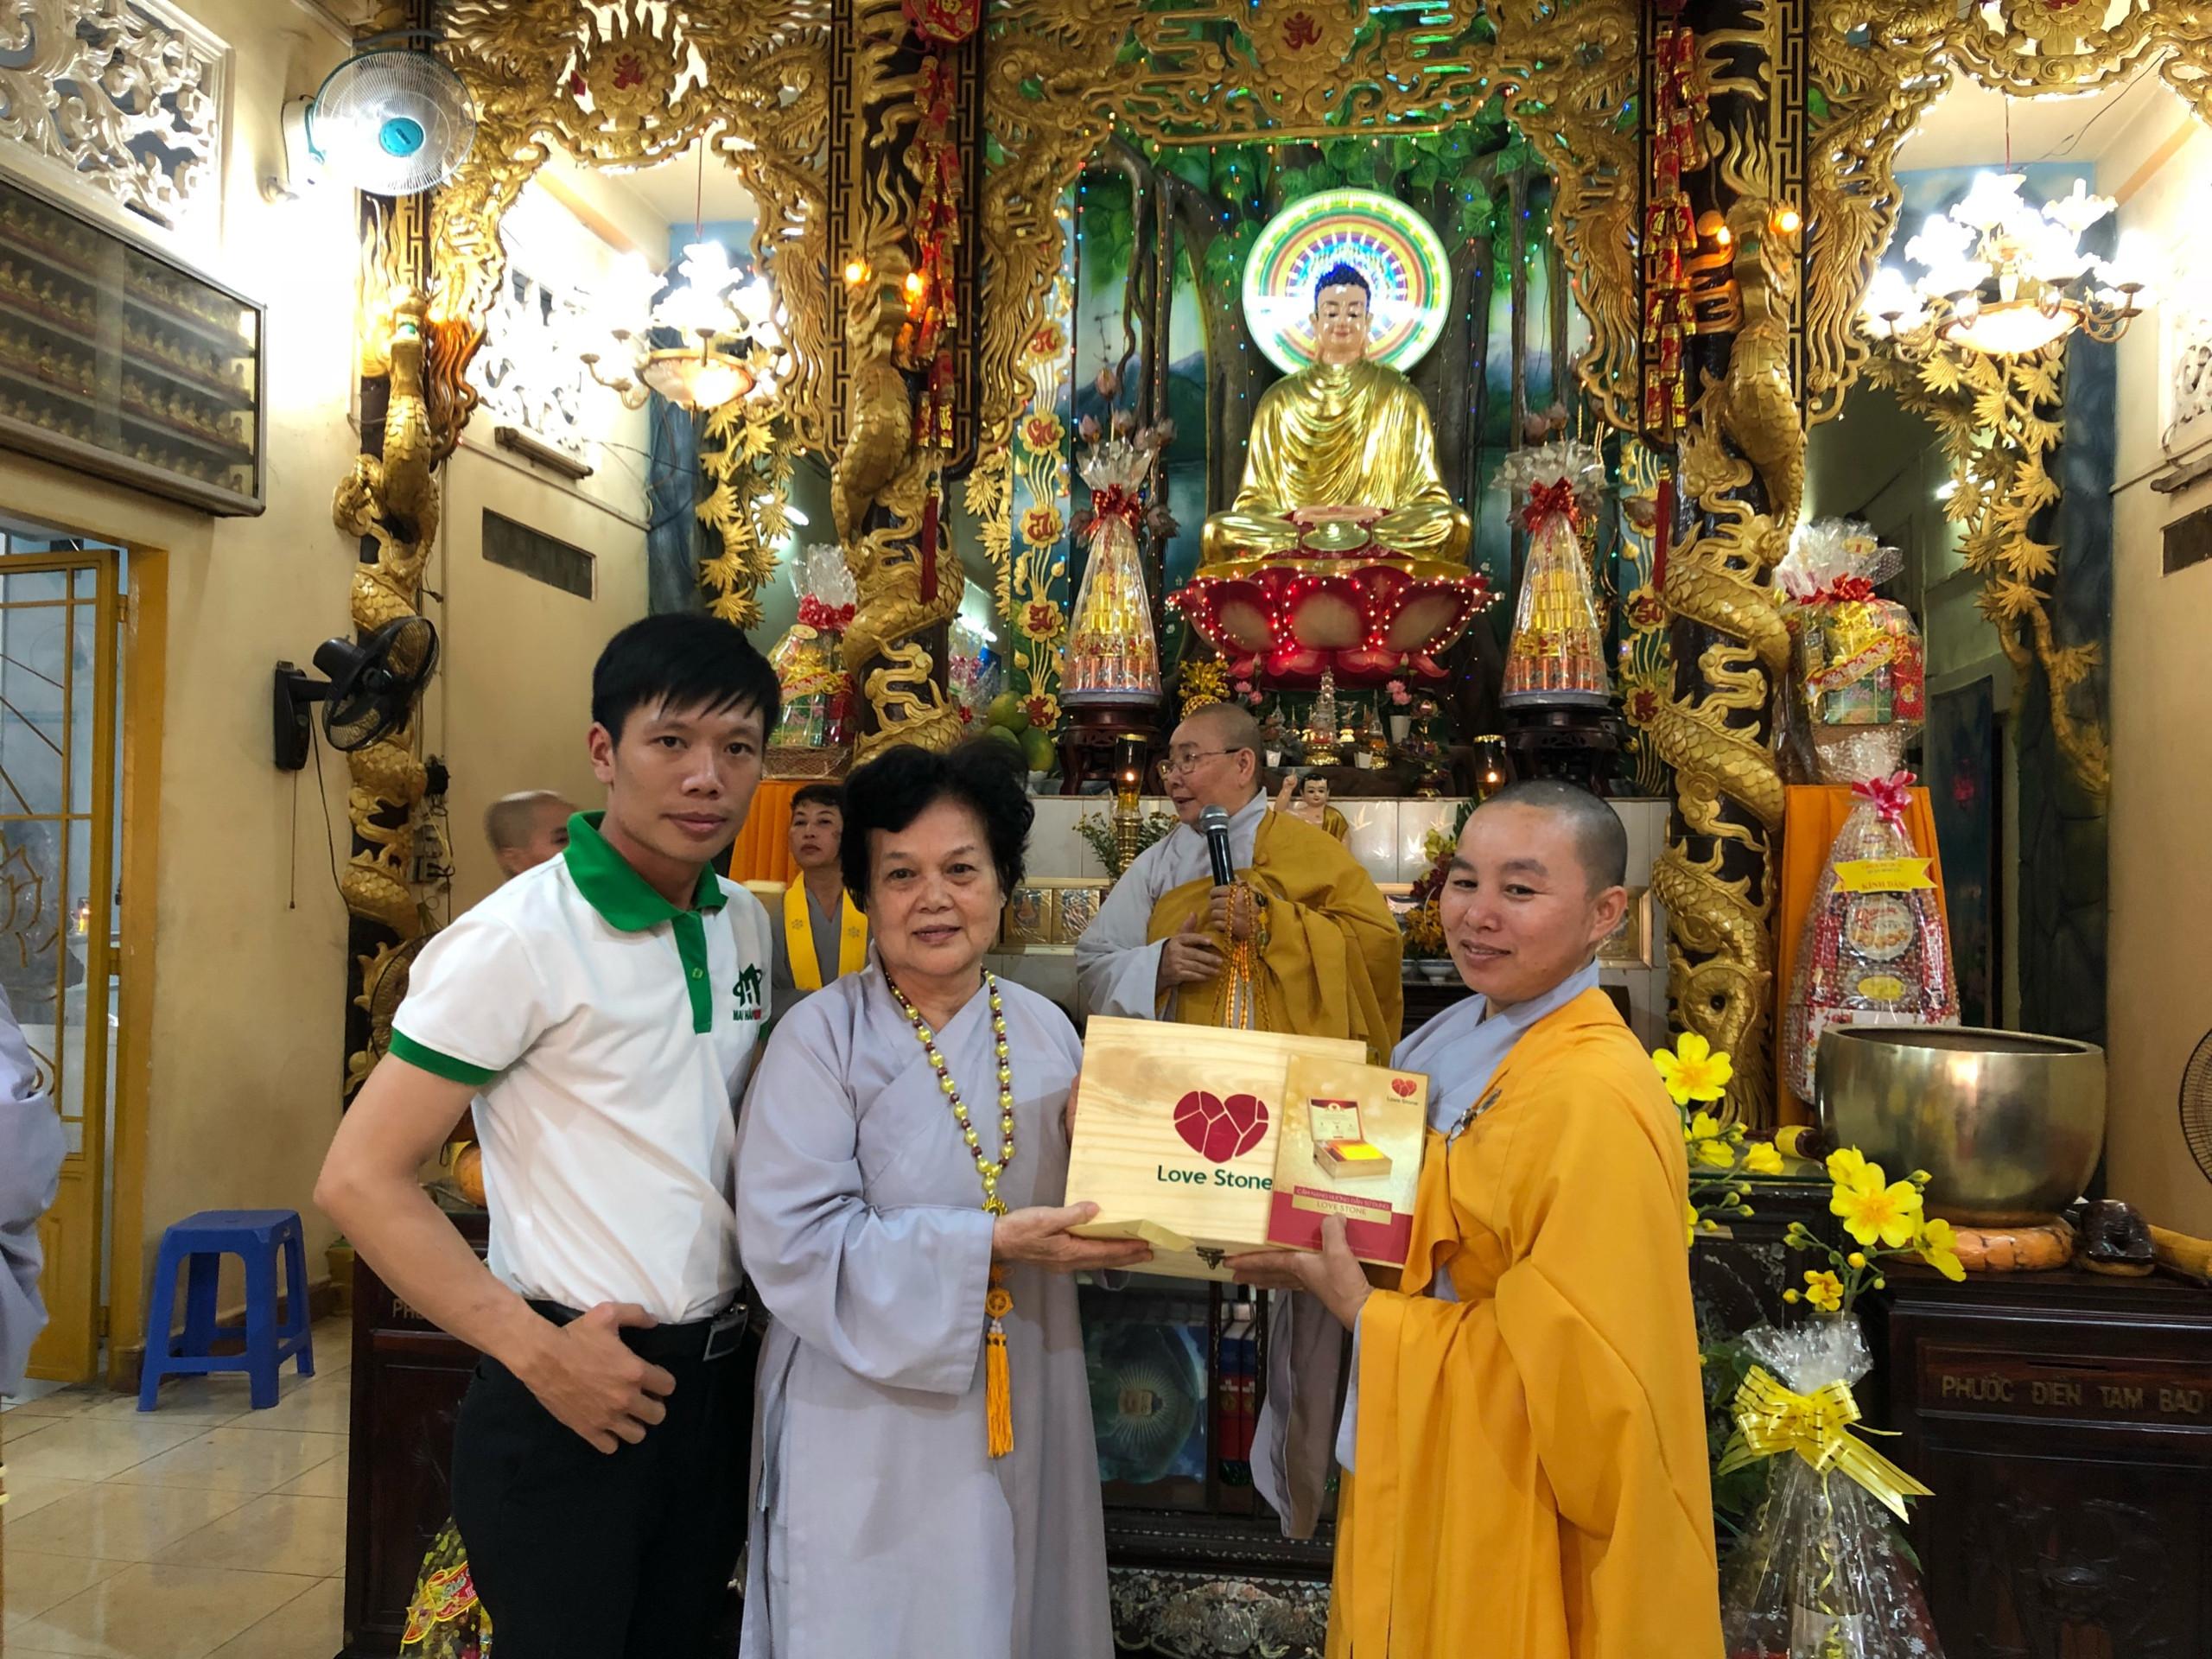 Love Stone “Trao sức khỏe – Gửi yêu thường” cùng chùa Hòa Quang trước thềm năm mới 2018